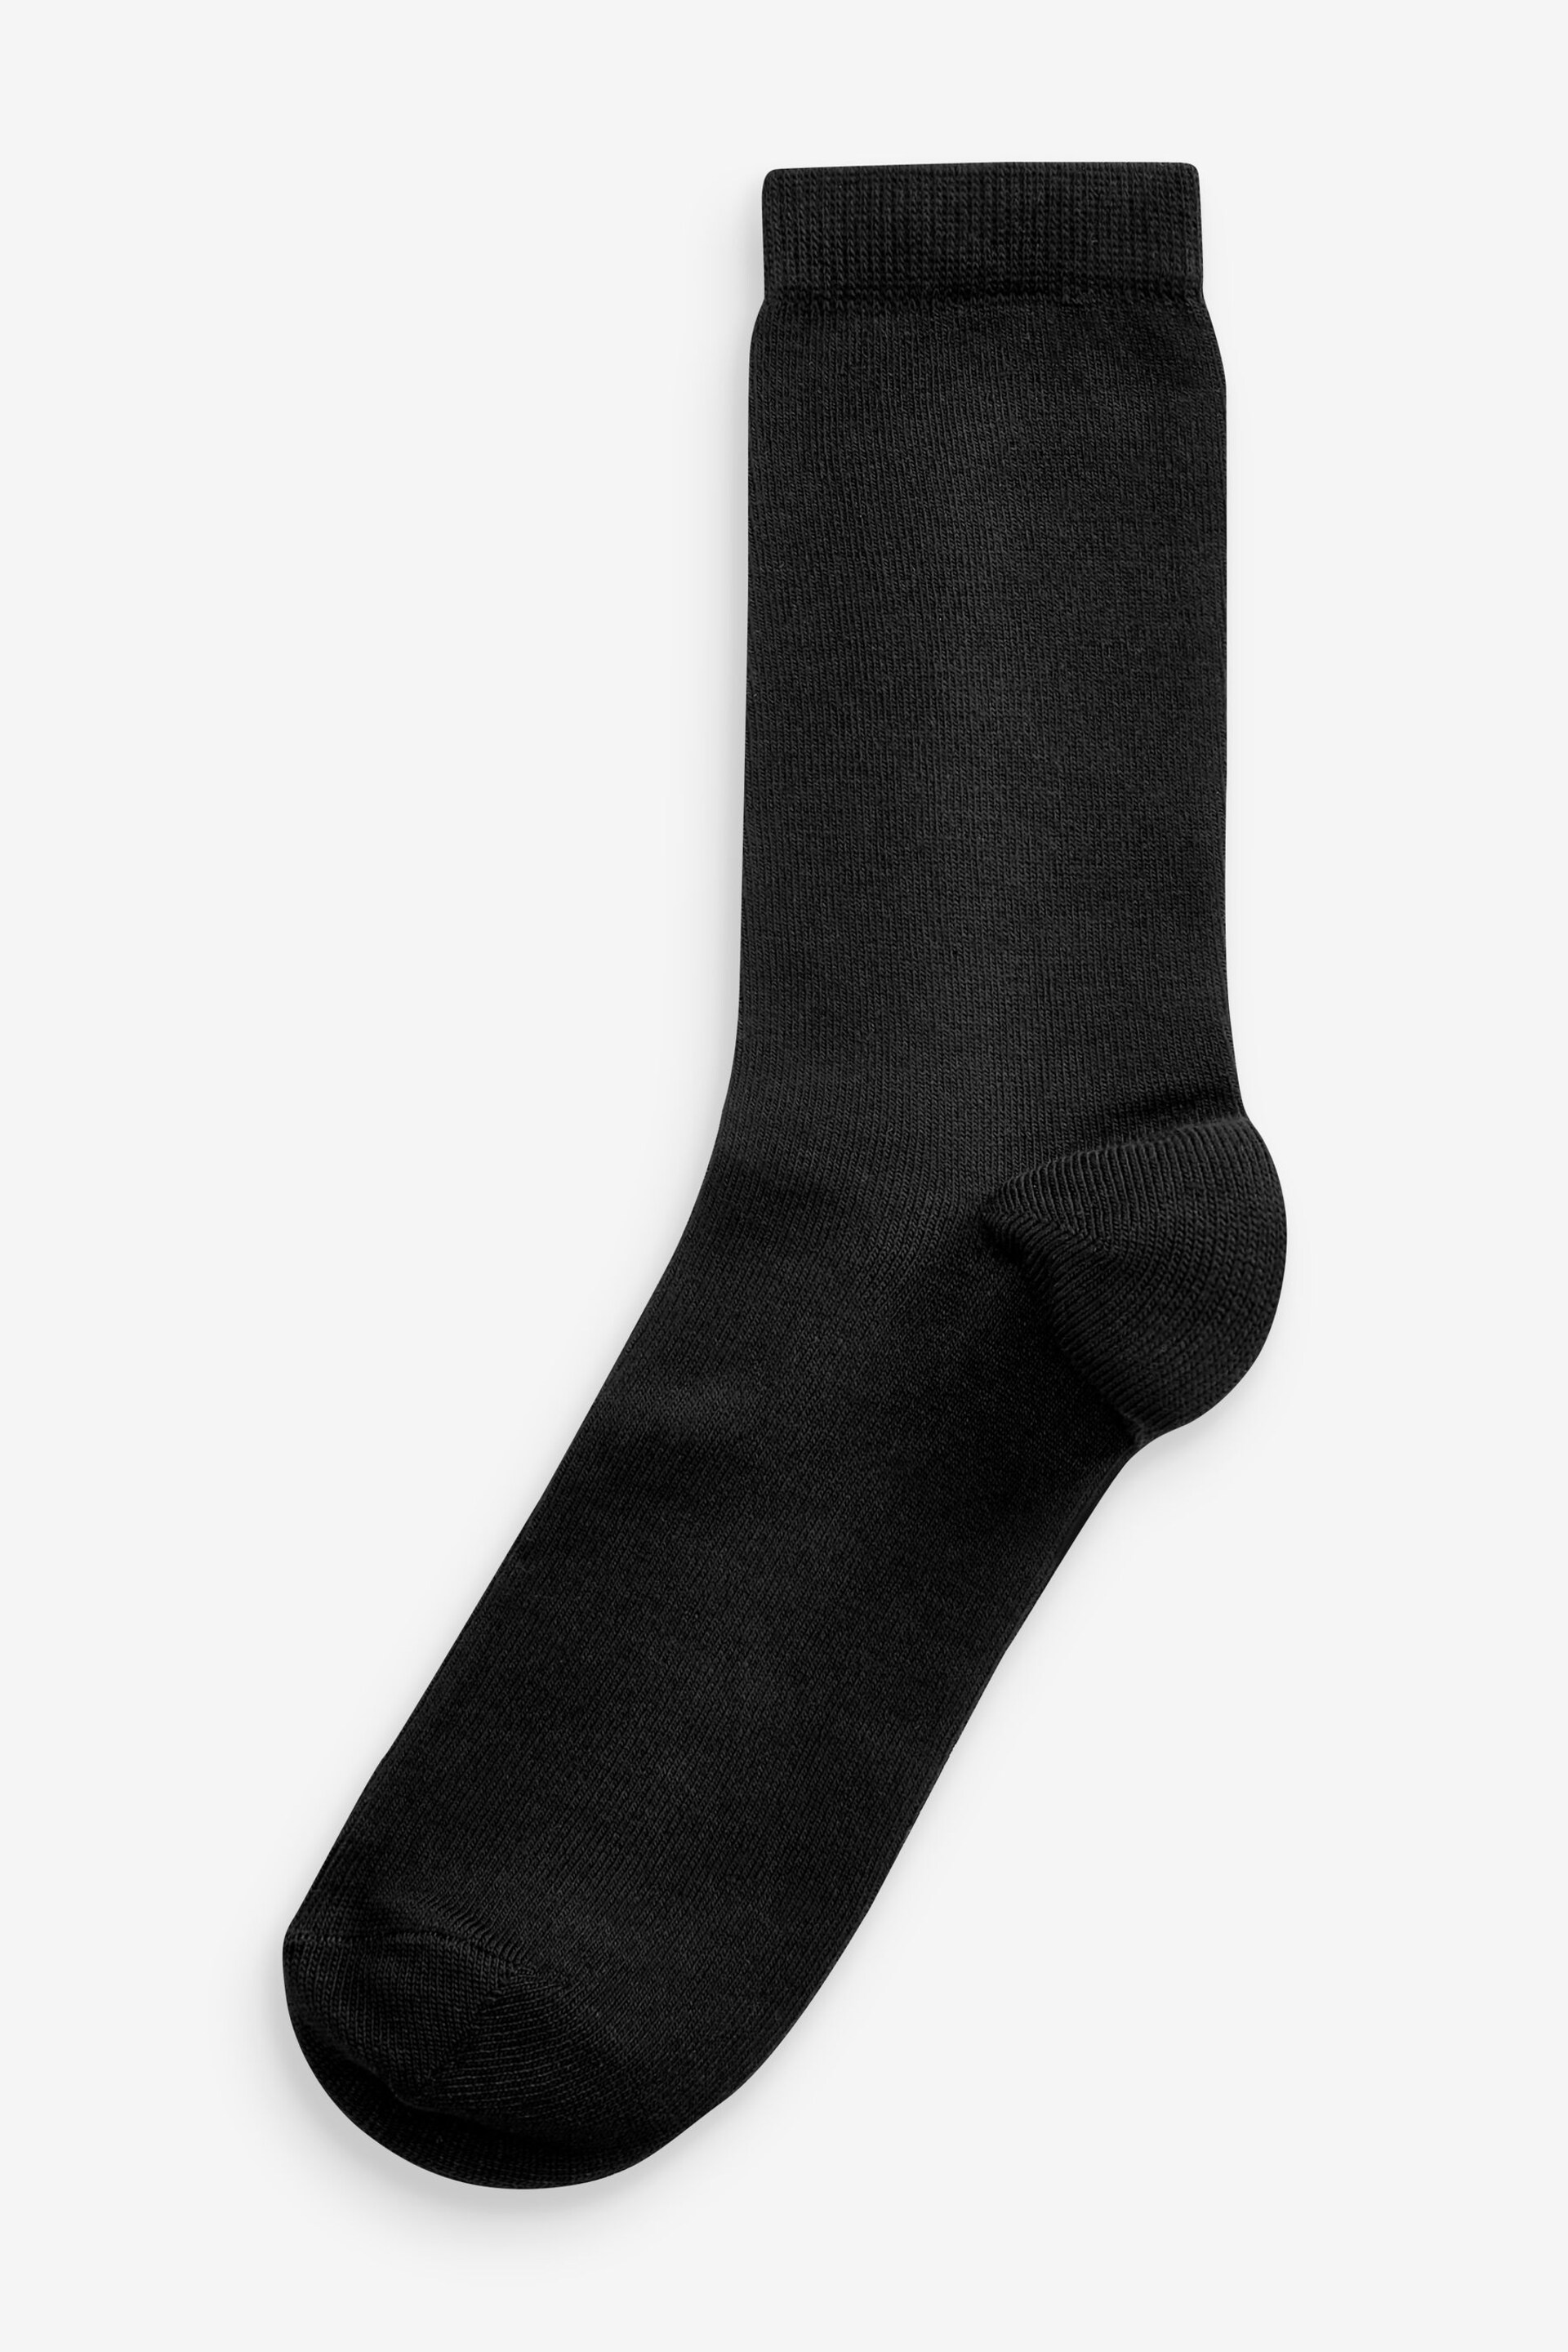 Black Soft Viscose Ankle Socks 3 Pack - Image 2 of 4